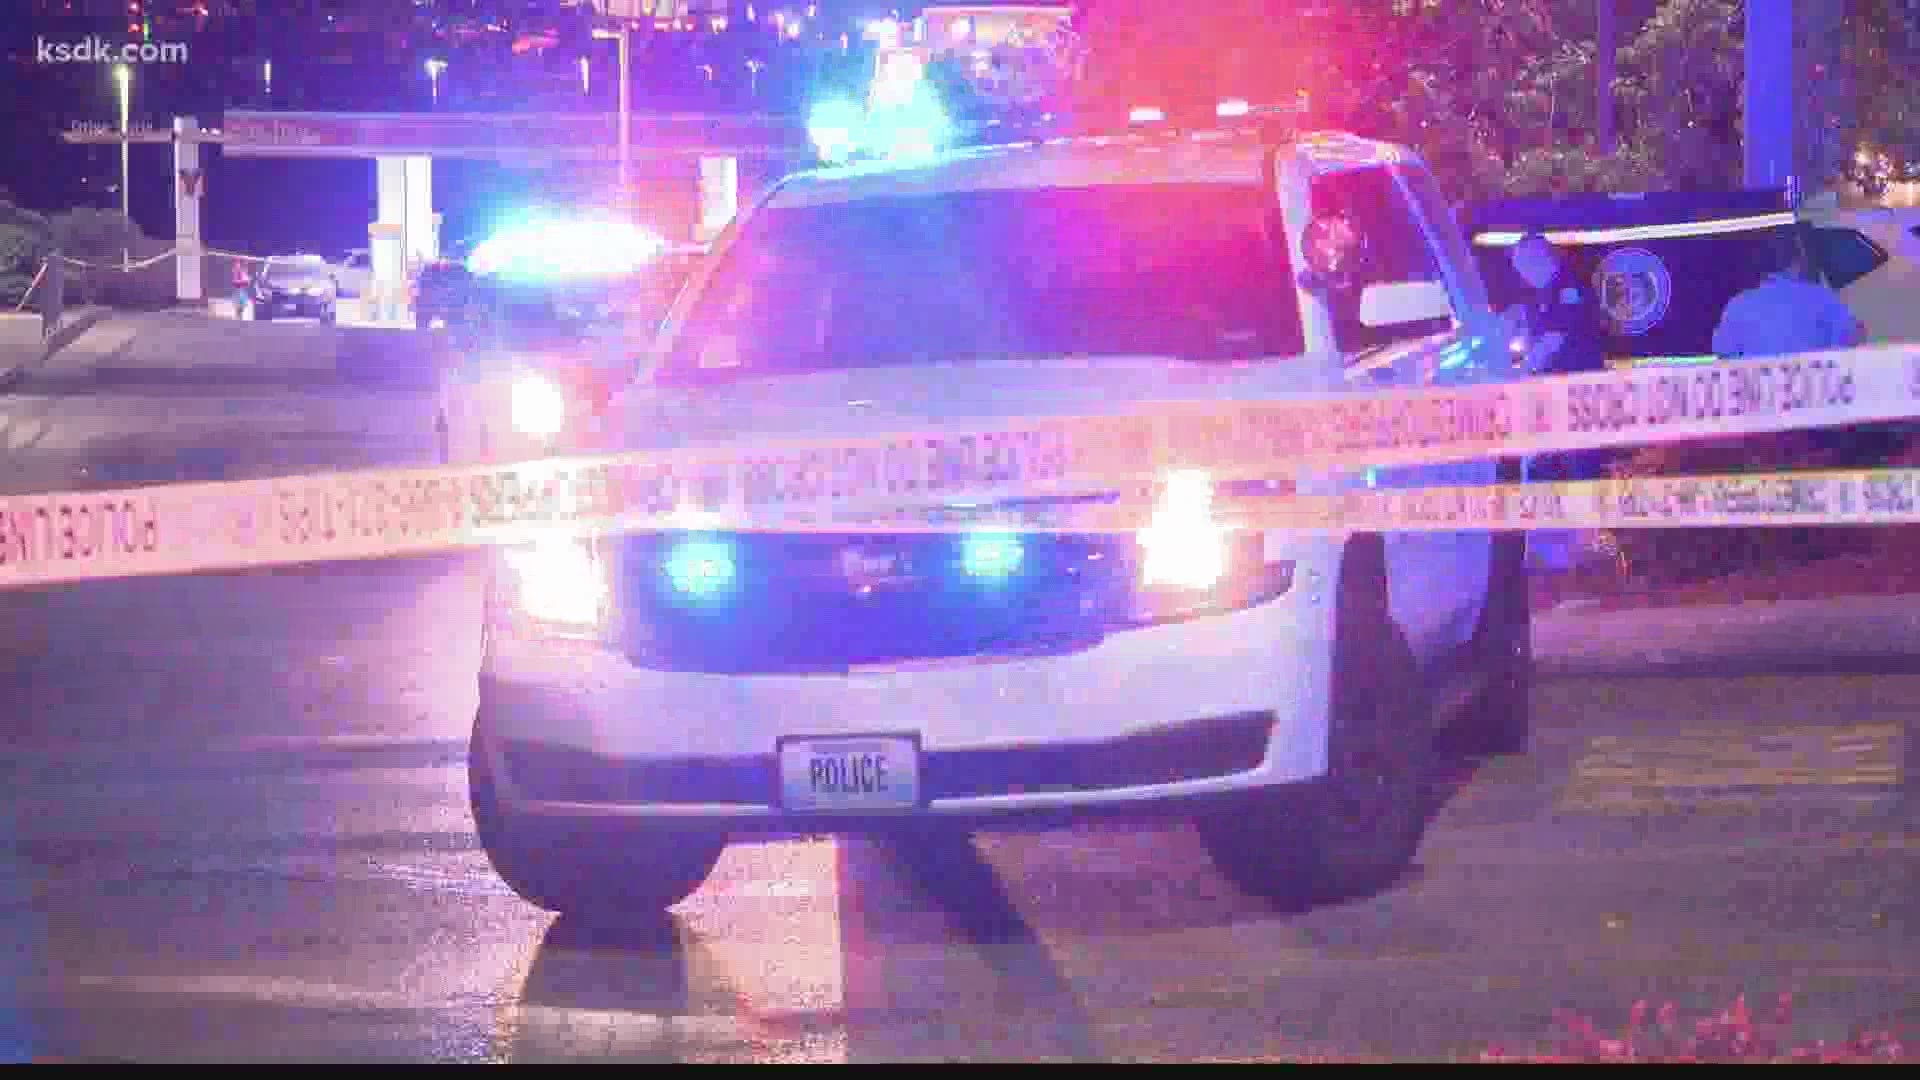 A man in his 20s was found shot in a car in the McDonald’s parking lot